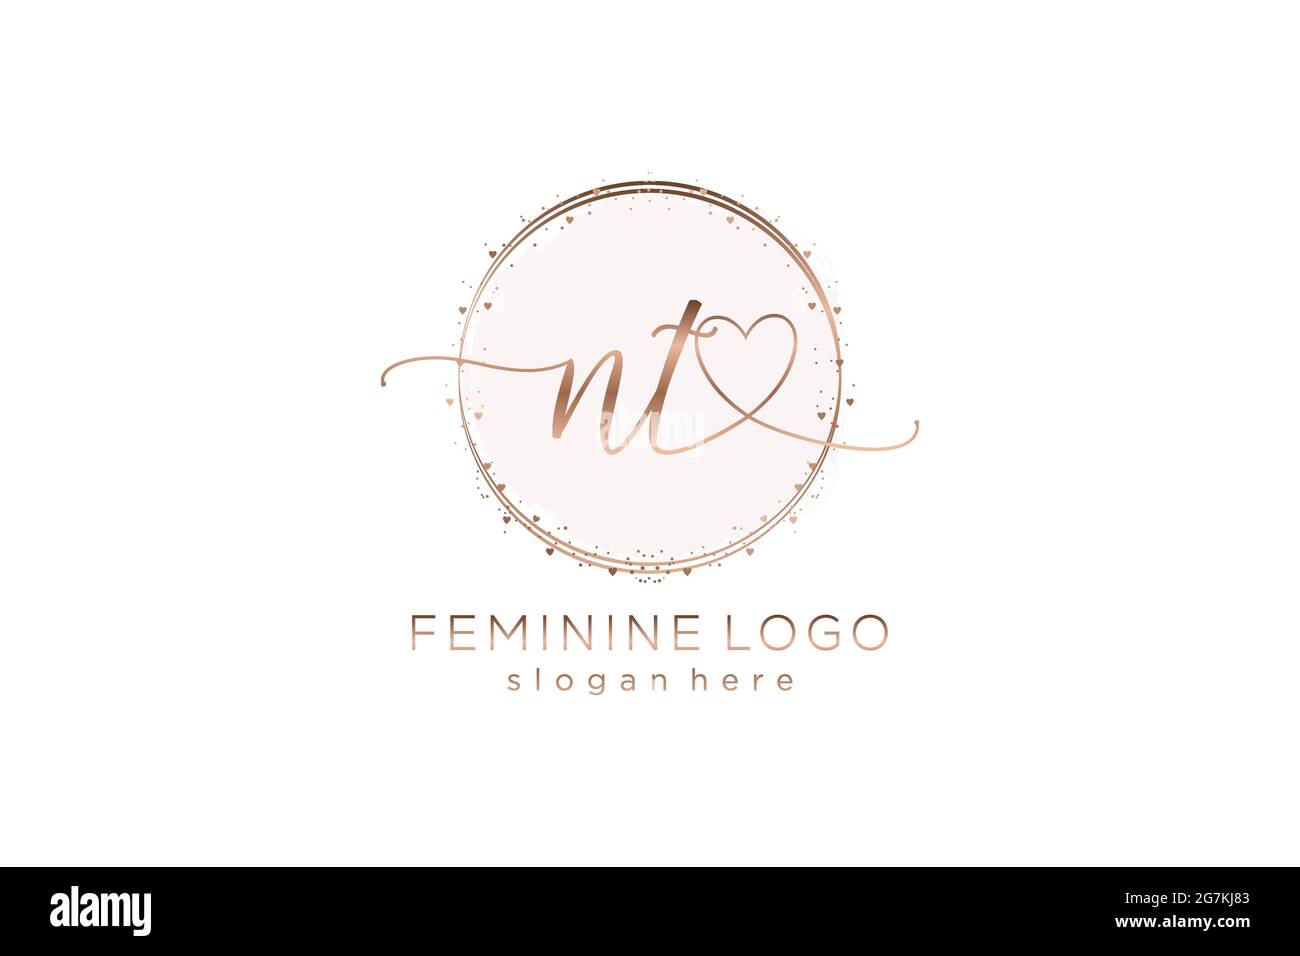 NT-Handschrift-Logo mit Kreis Vorlage Vektor-Logo der ersten Hochzeit, Mode, Blumen und botanischen mit kreativen Vorlage. Stock Vektor